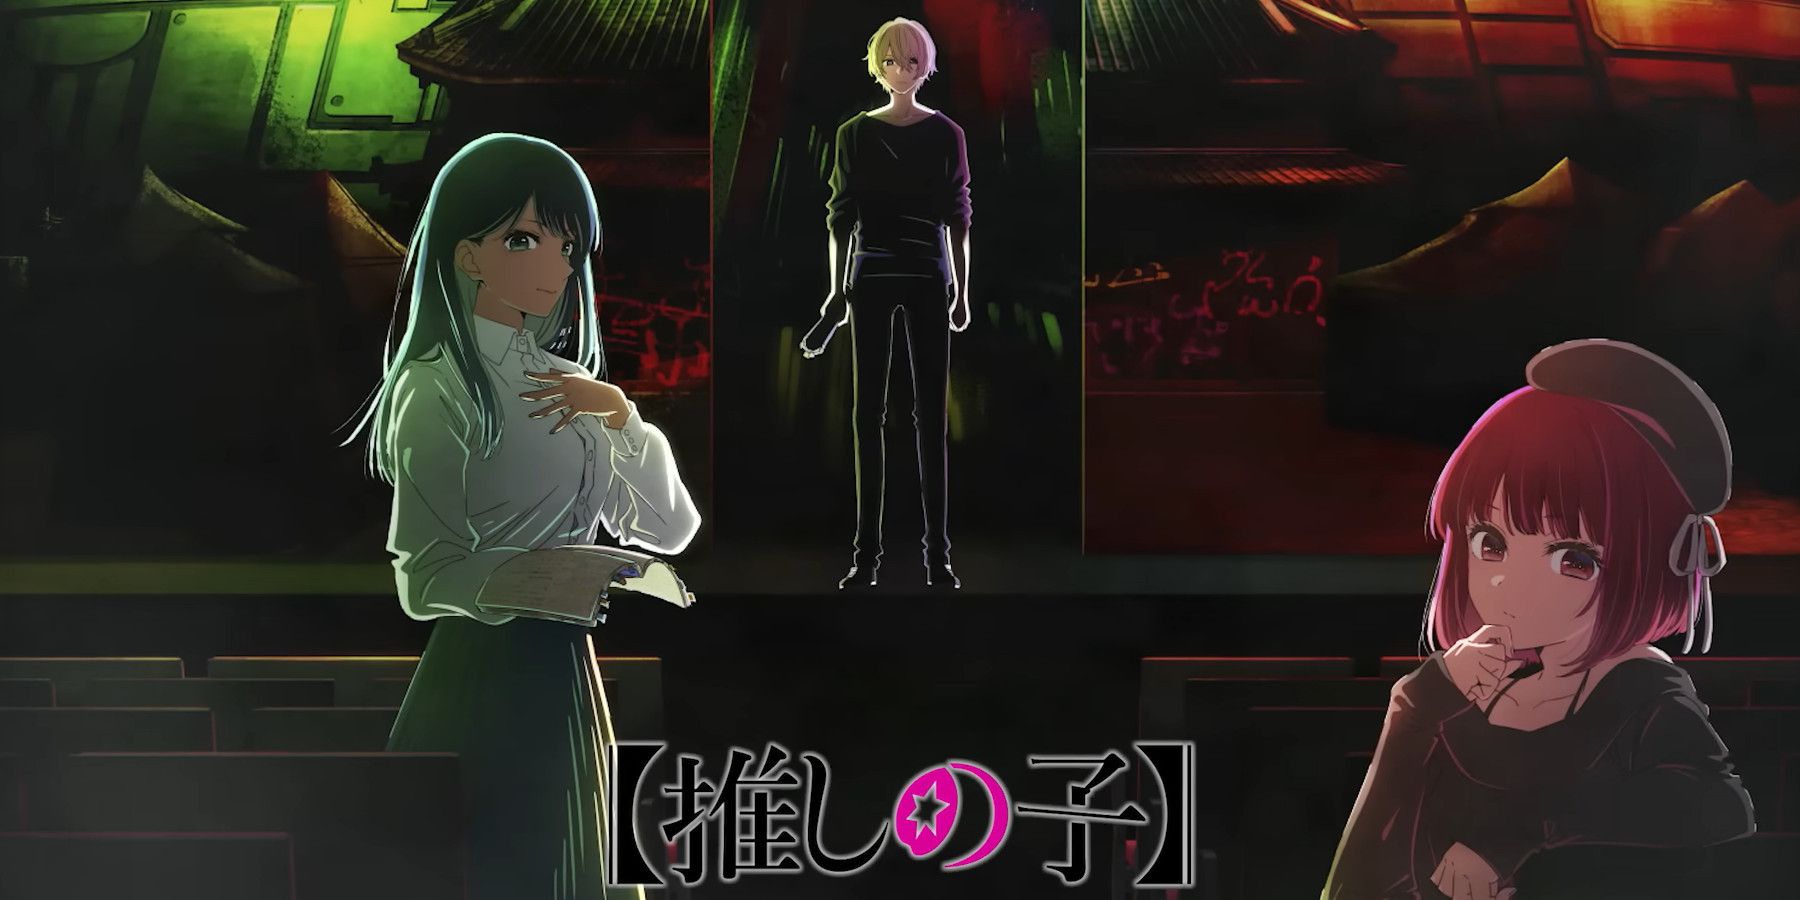 YOASOBI's Oshi no Ko Anime Opening 'Idol' Makes History With